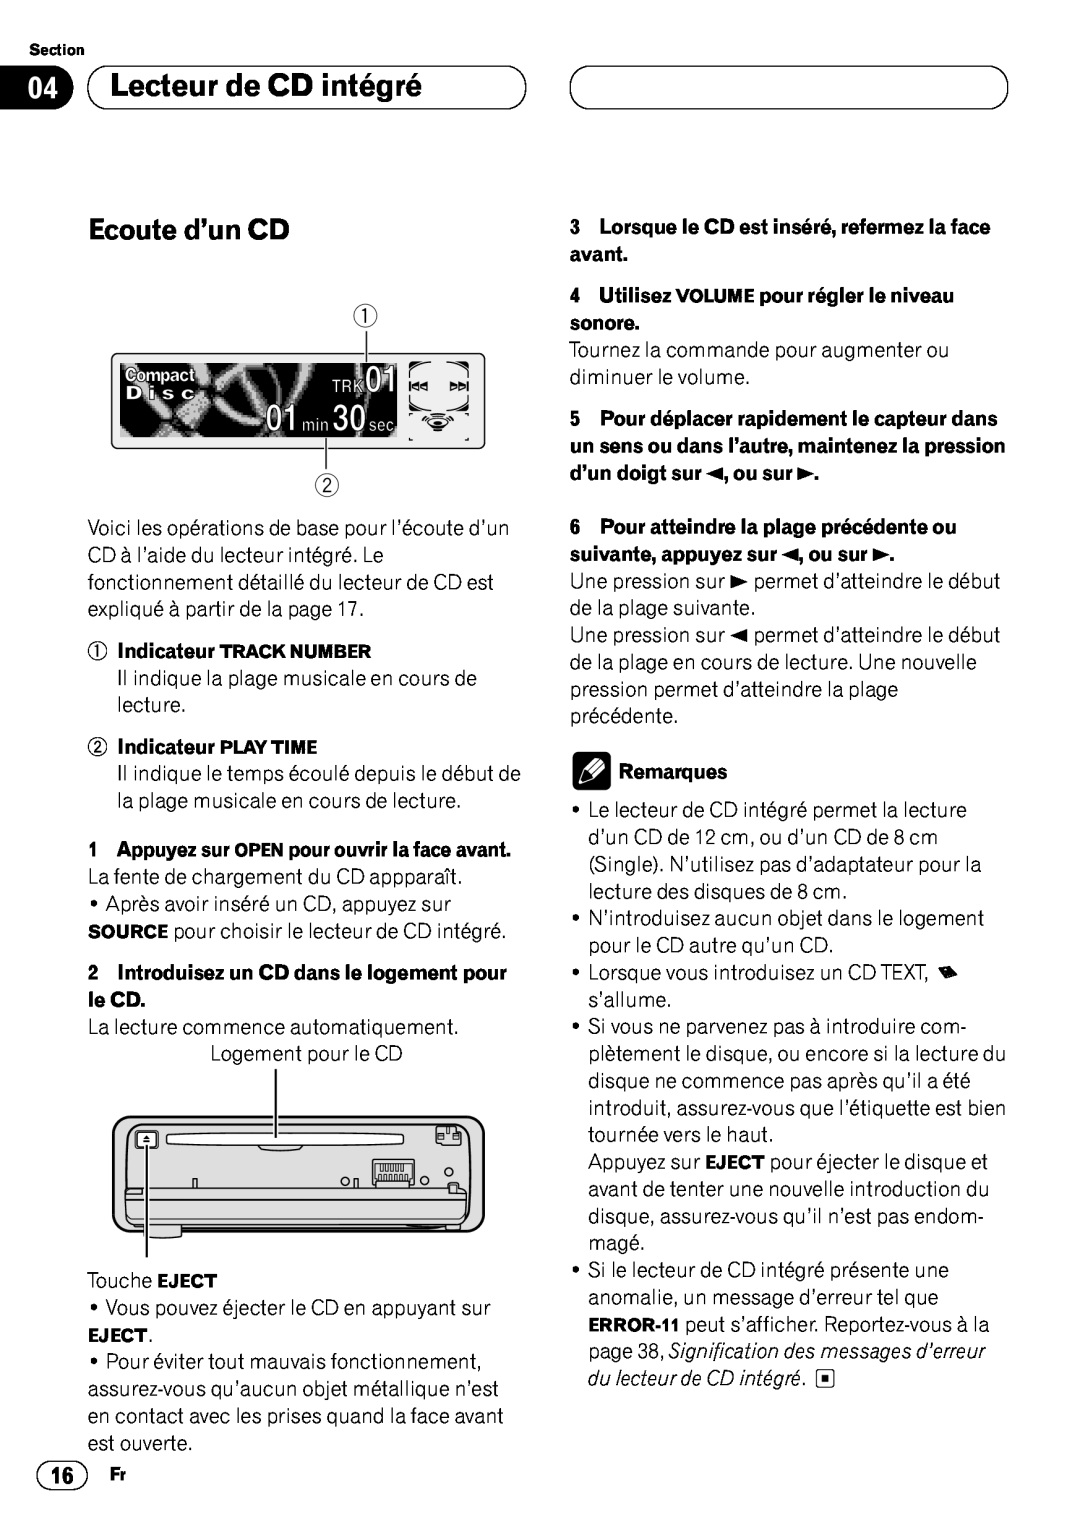 Pioneer DEH-P6400 operation manual 04Lecteur de CD intégré, Ecoute d’un CD, 2Indicateur PLAY TIME, Remarques 